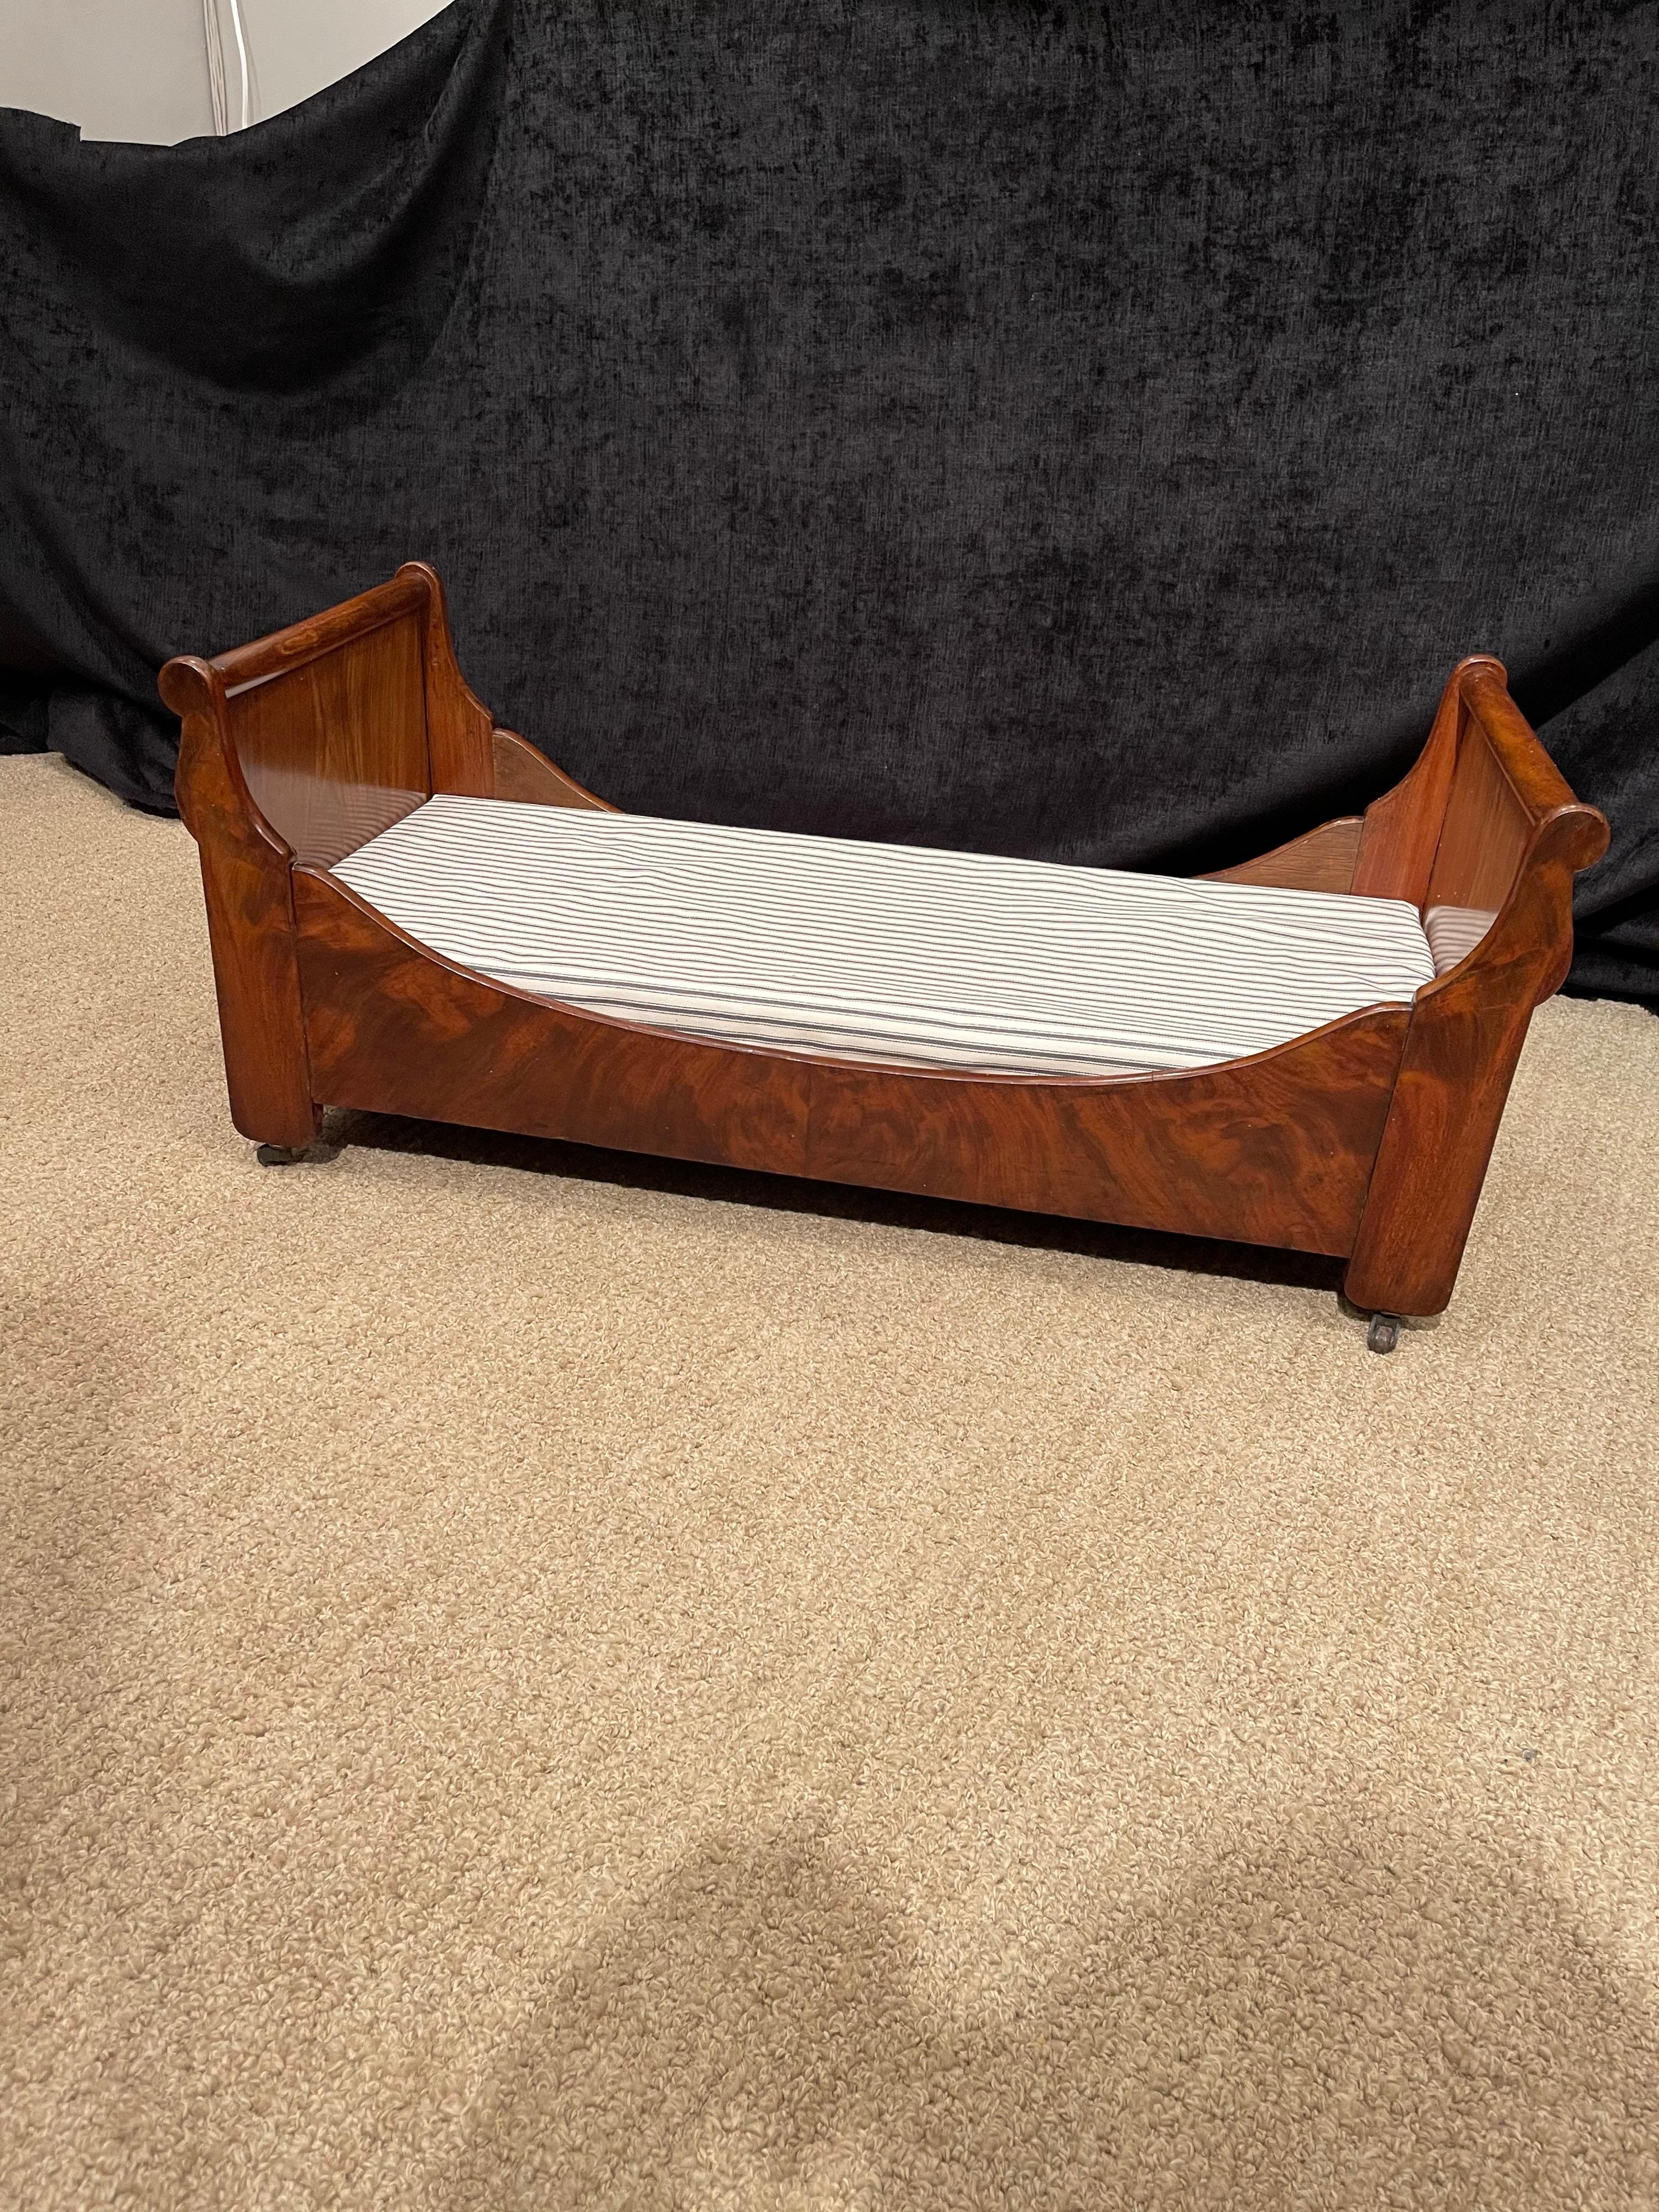 Diese seltene Tischler Beispiel eines antiken Empire Mahagoni Schlitten Bett,
Als Hundebett. Mit neuem Polyschaum-Bett, bezogen mit schwarz-weißem Inlett.